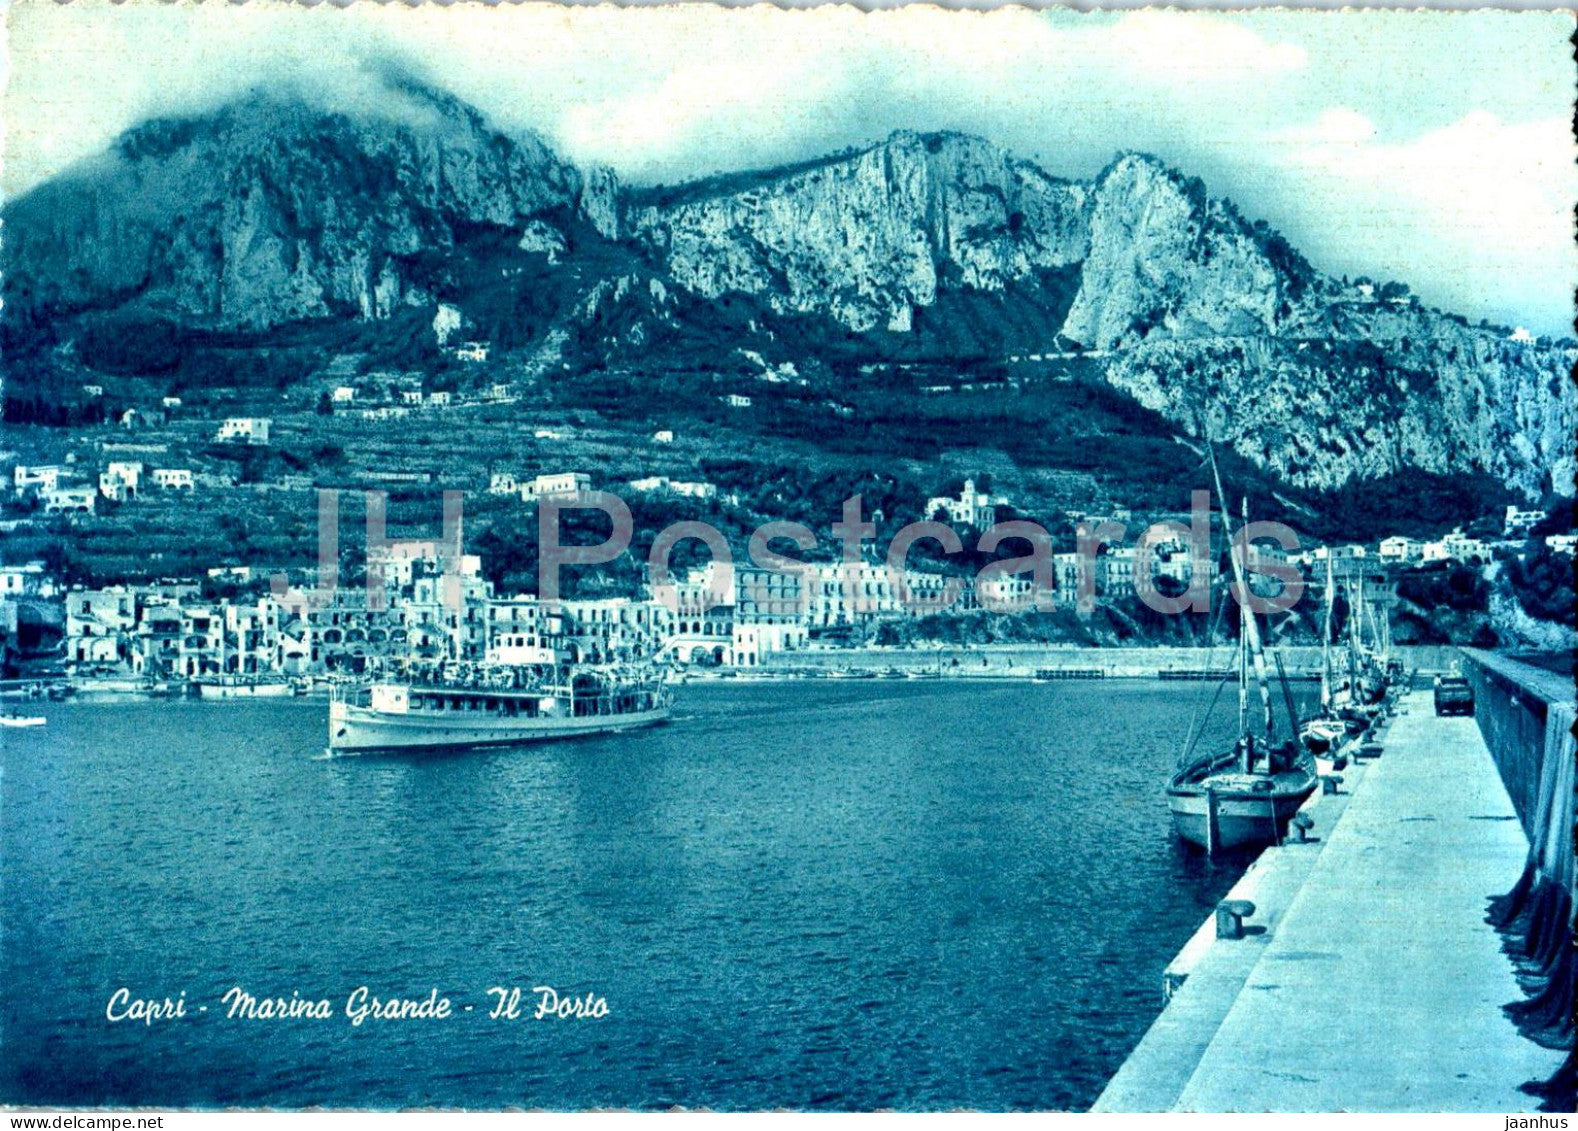 Capri - Marina Grande - Il Porto - The Port - ship - boat - Italy - unused - JH Postcards